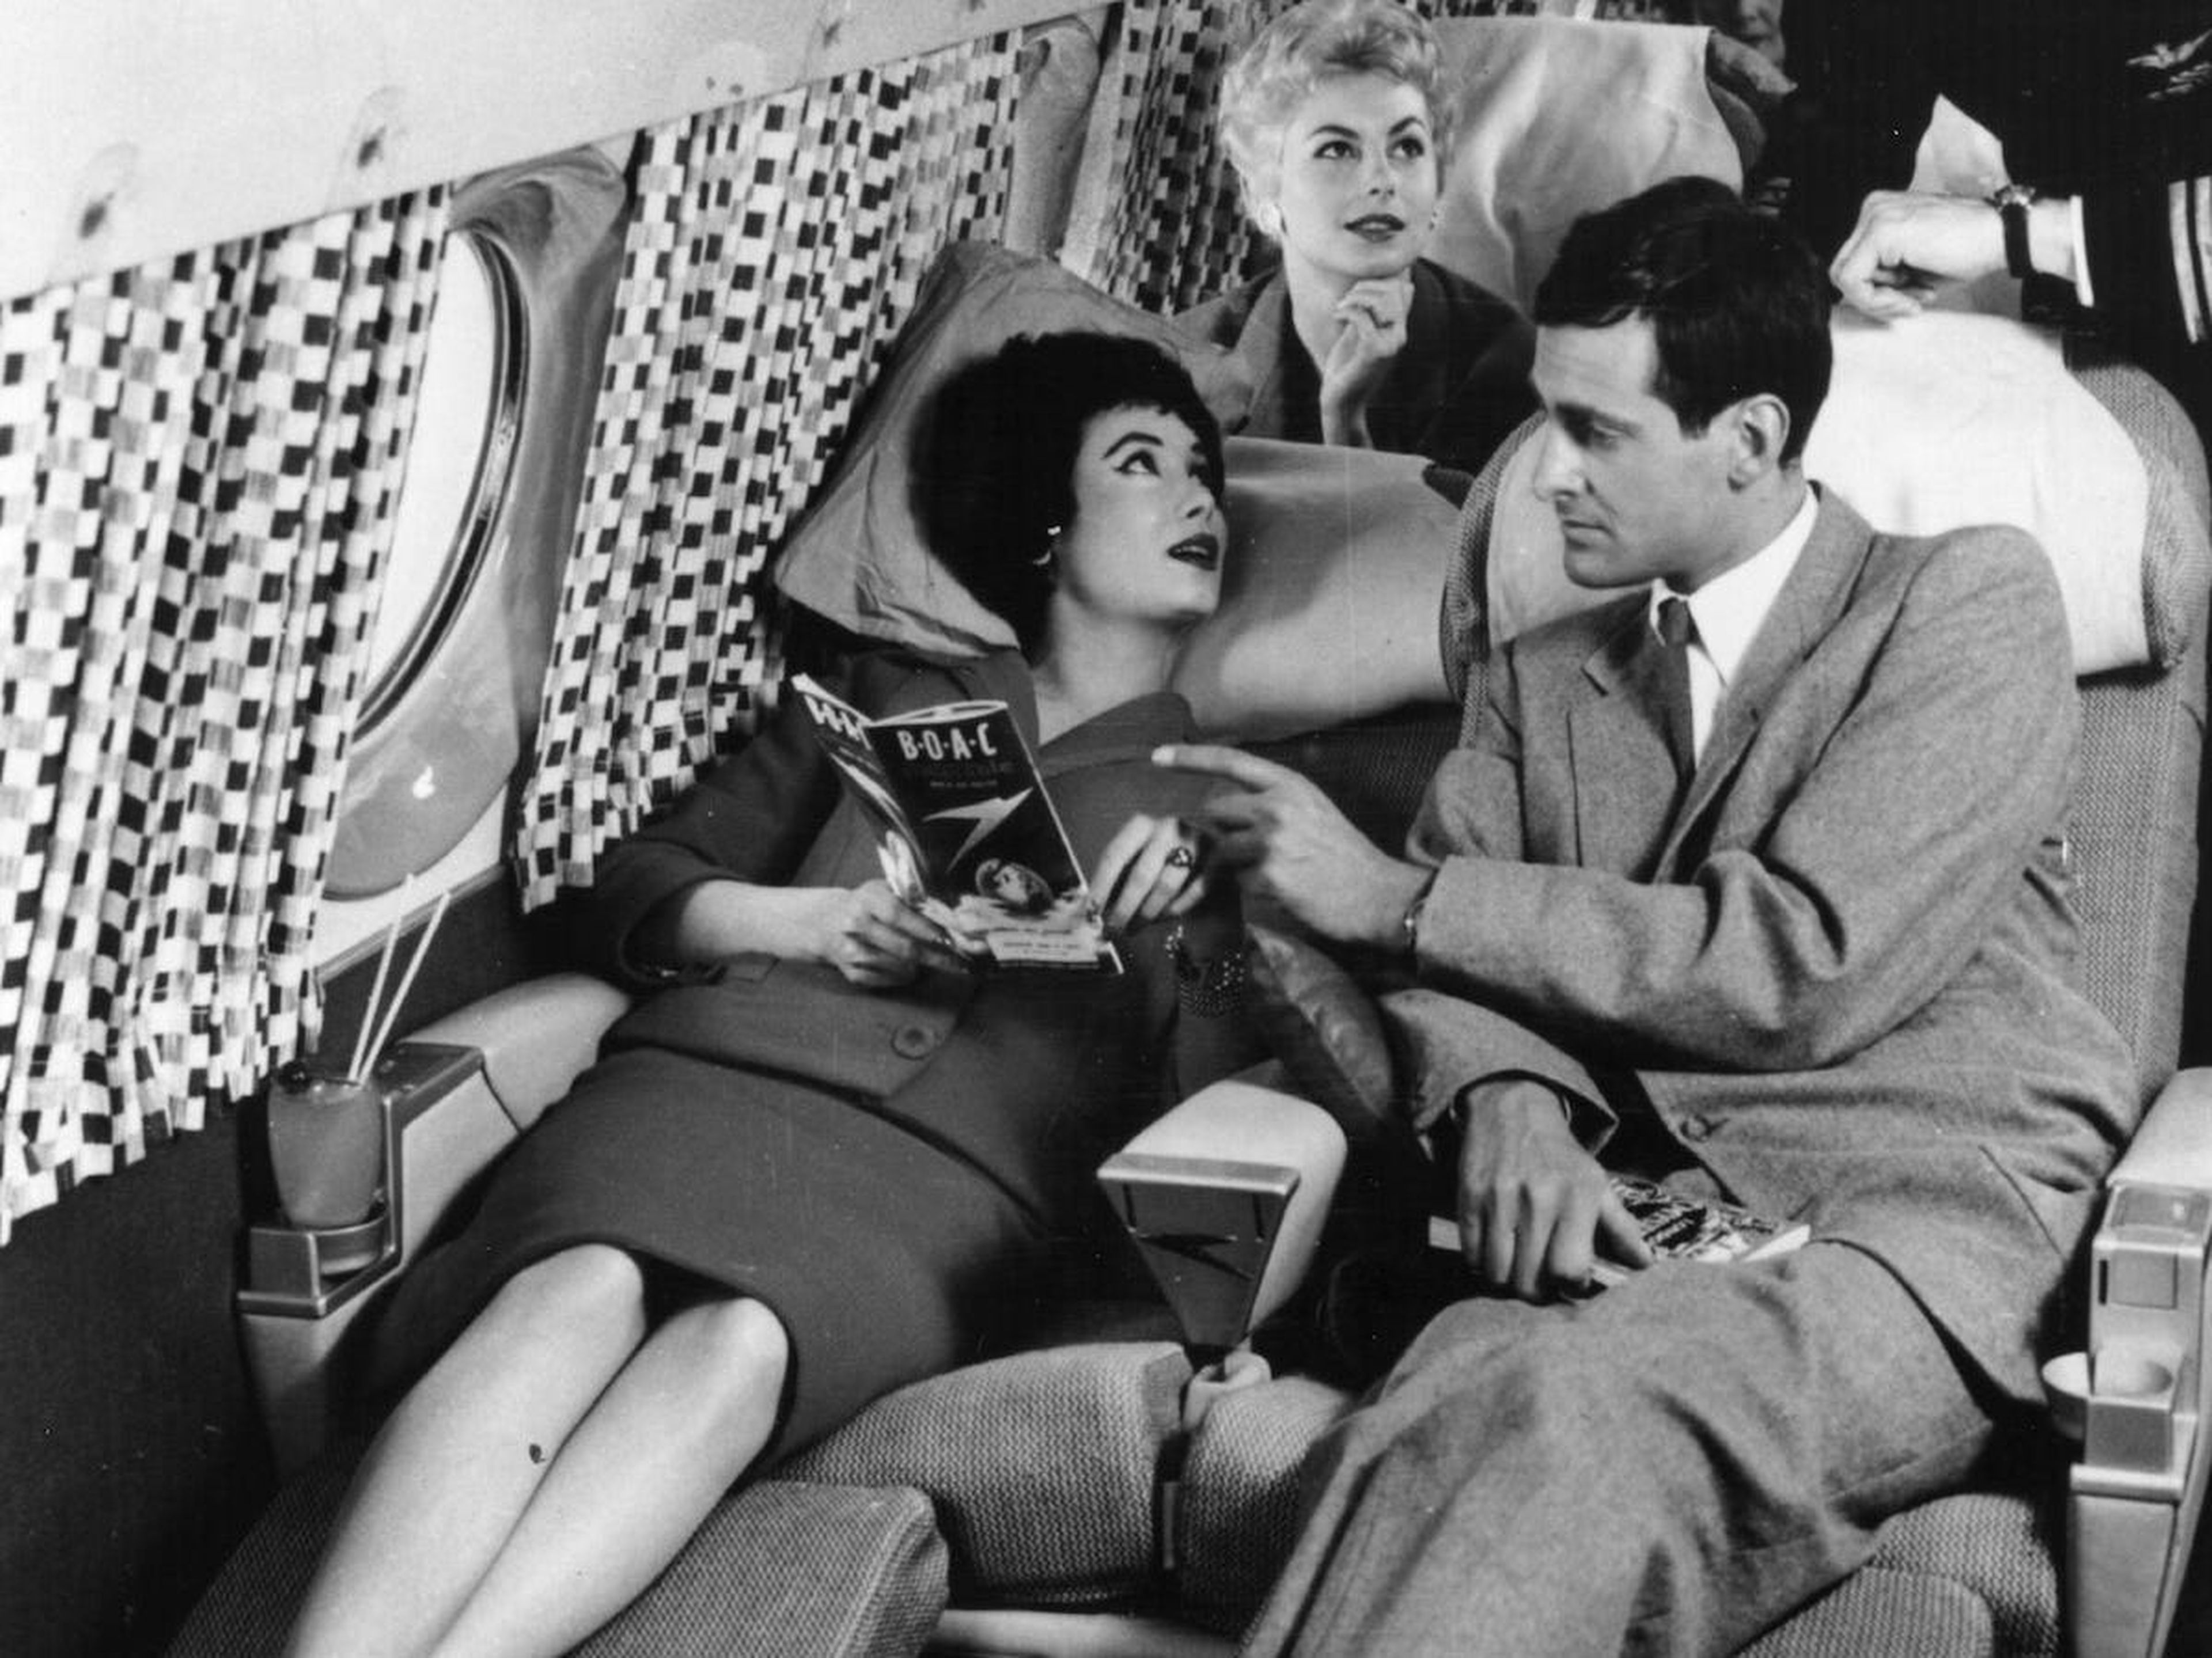 Pasajeros descansando en asientos reclinables en la década de 1950.